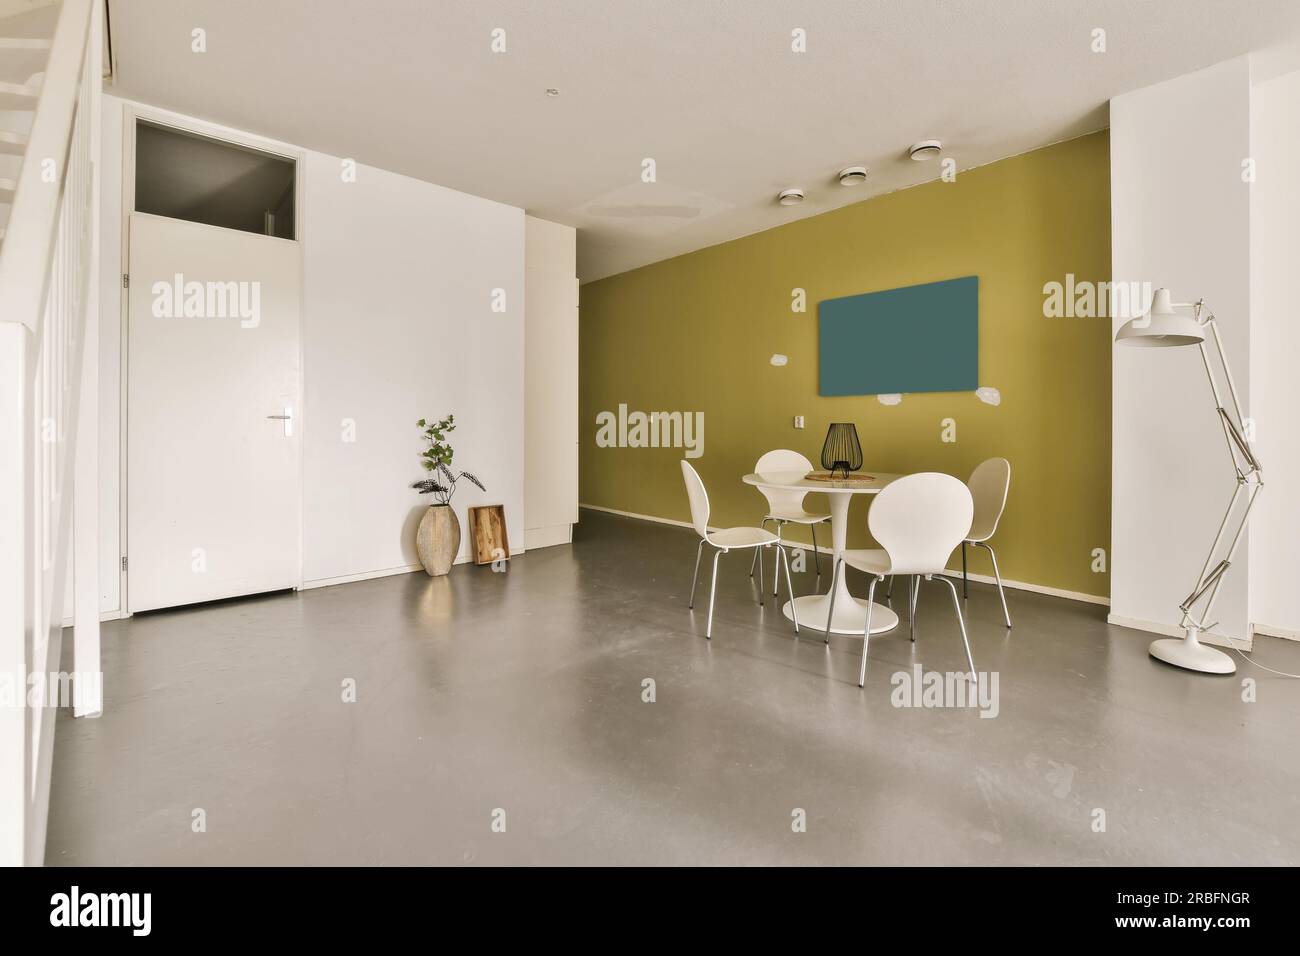 Ein Wohnzimmer mit grünen Wänden und weißen Möbeln auf dem Boden, es gibt eine offene Tür, die zu einem anderen Zimmer führt Stockfoto